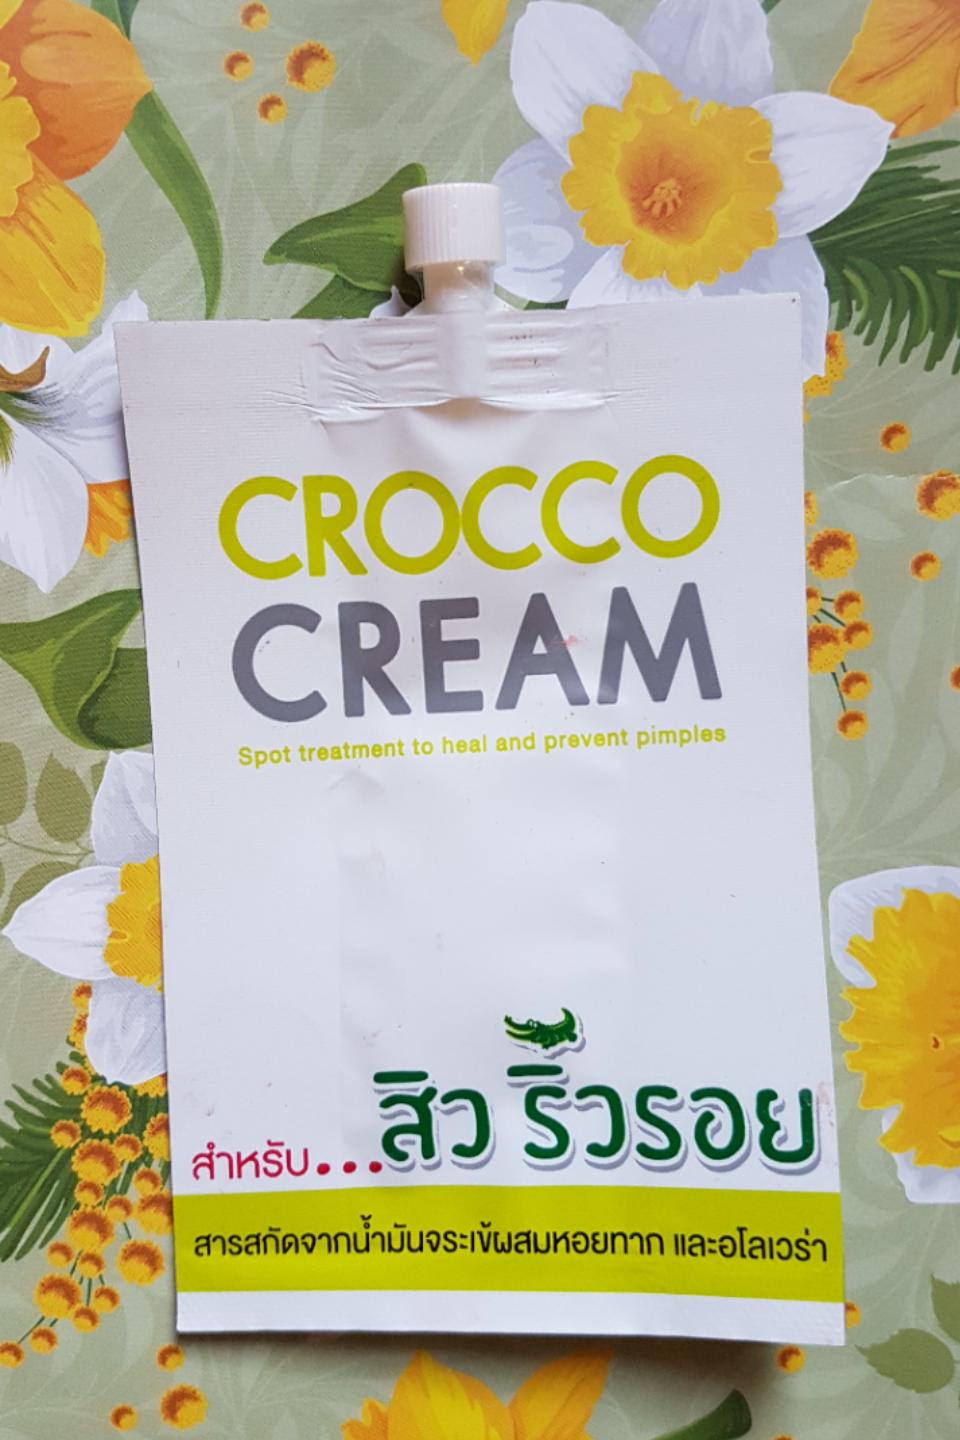 Натуральный заживляющий крем из Тайланда против воспалений с жиром крокодила Fuji Crocco cream купить в Москве и Московской области.